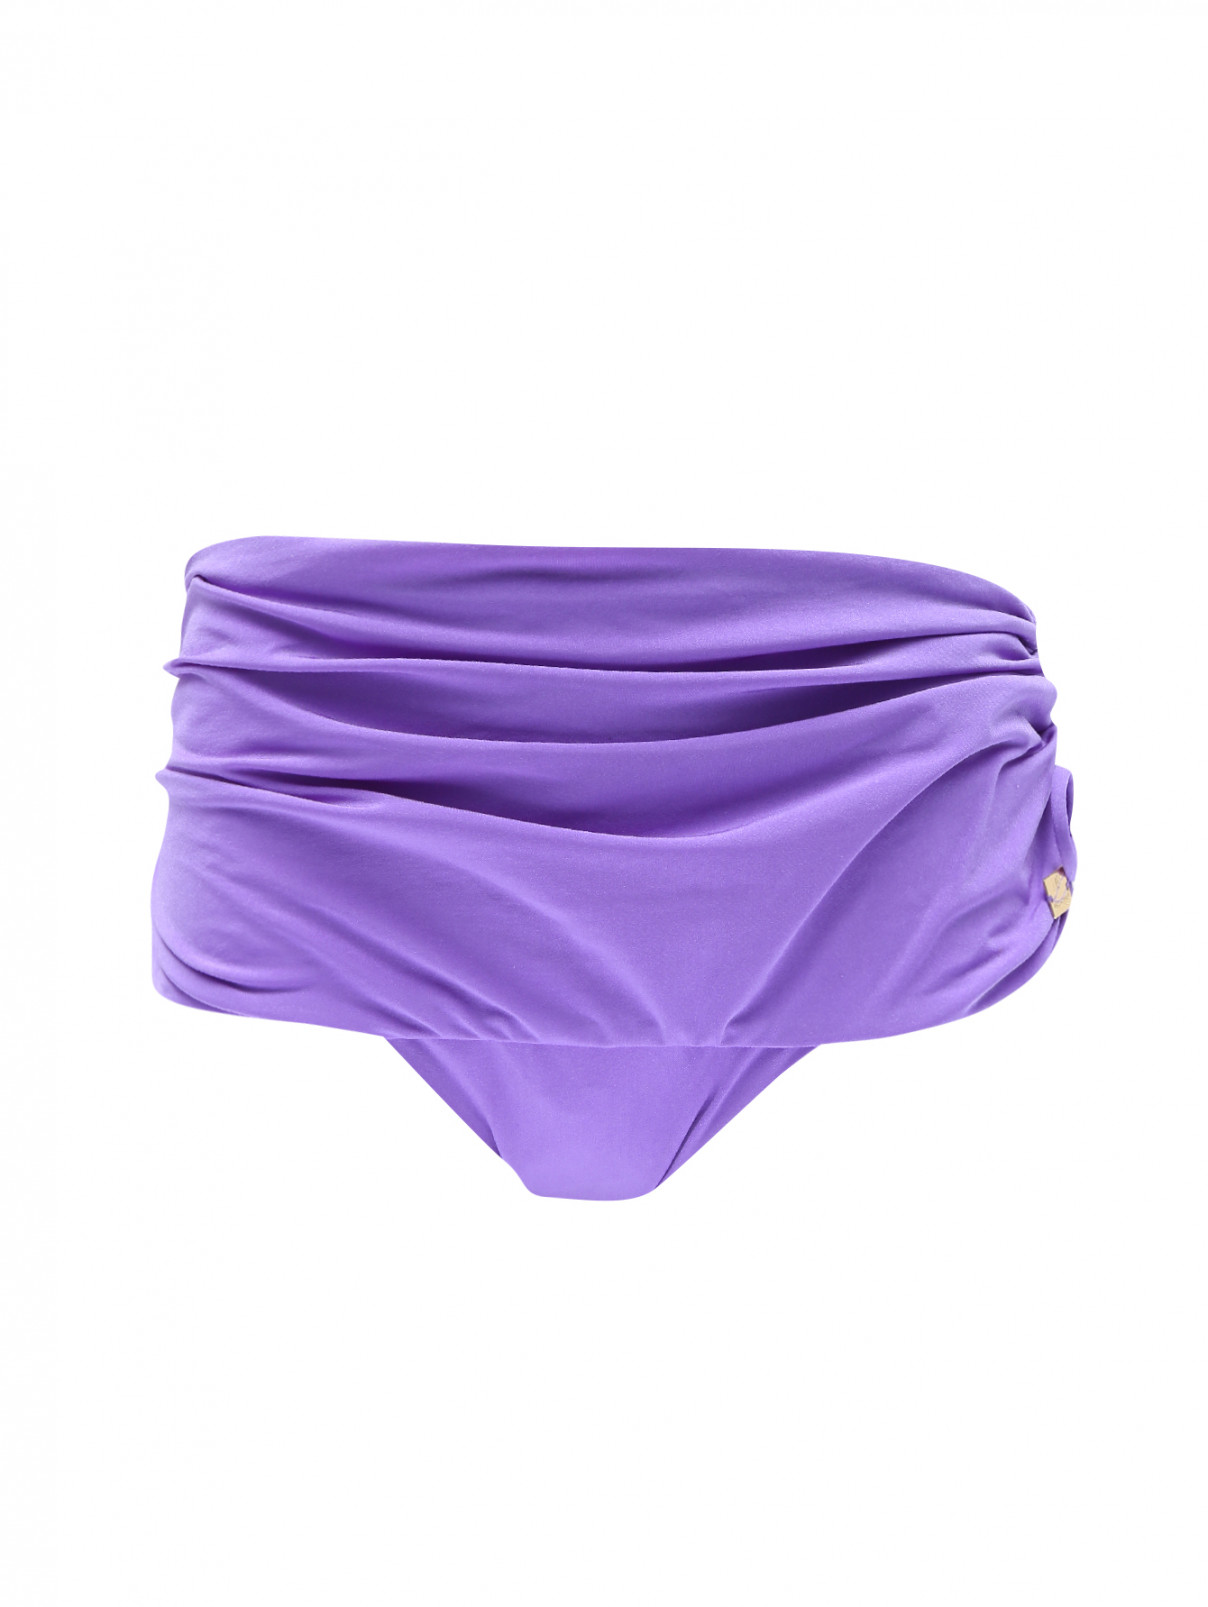 Купальник низ Marina Rinaldi  –  Общий вид  – Цвет:  Фиолетовый